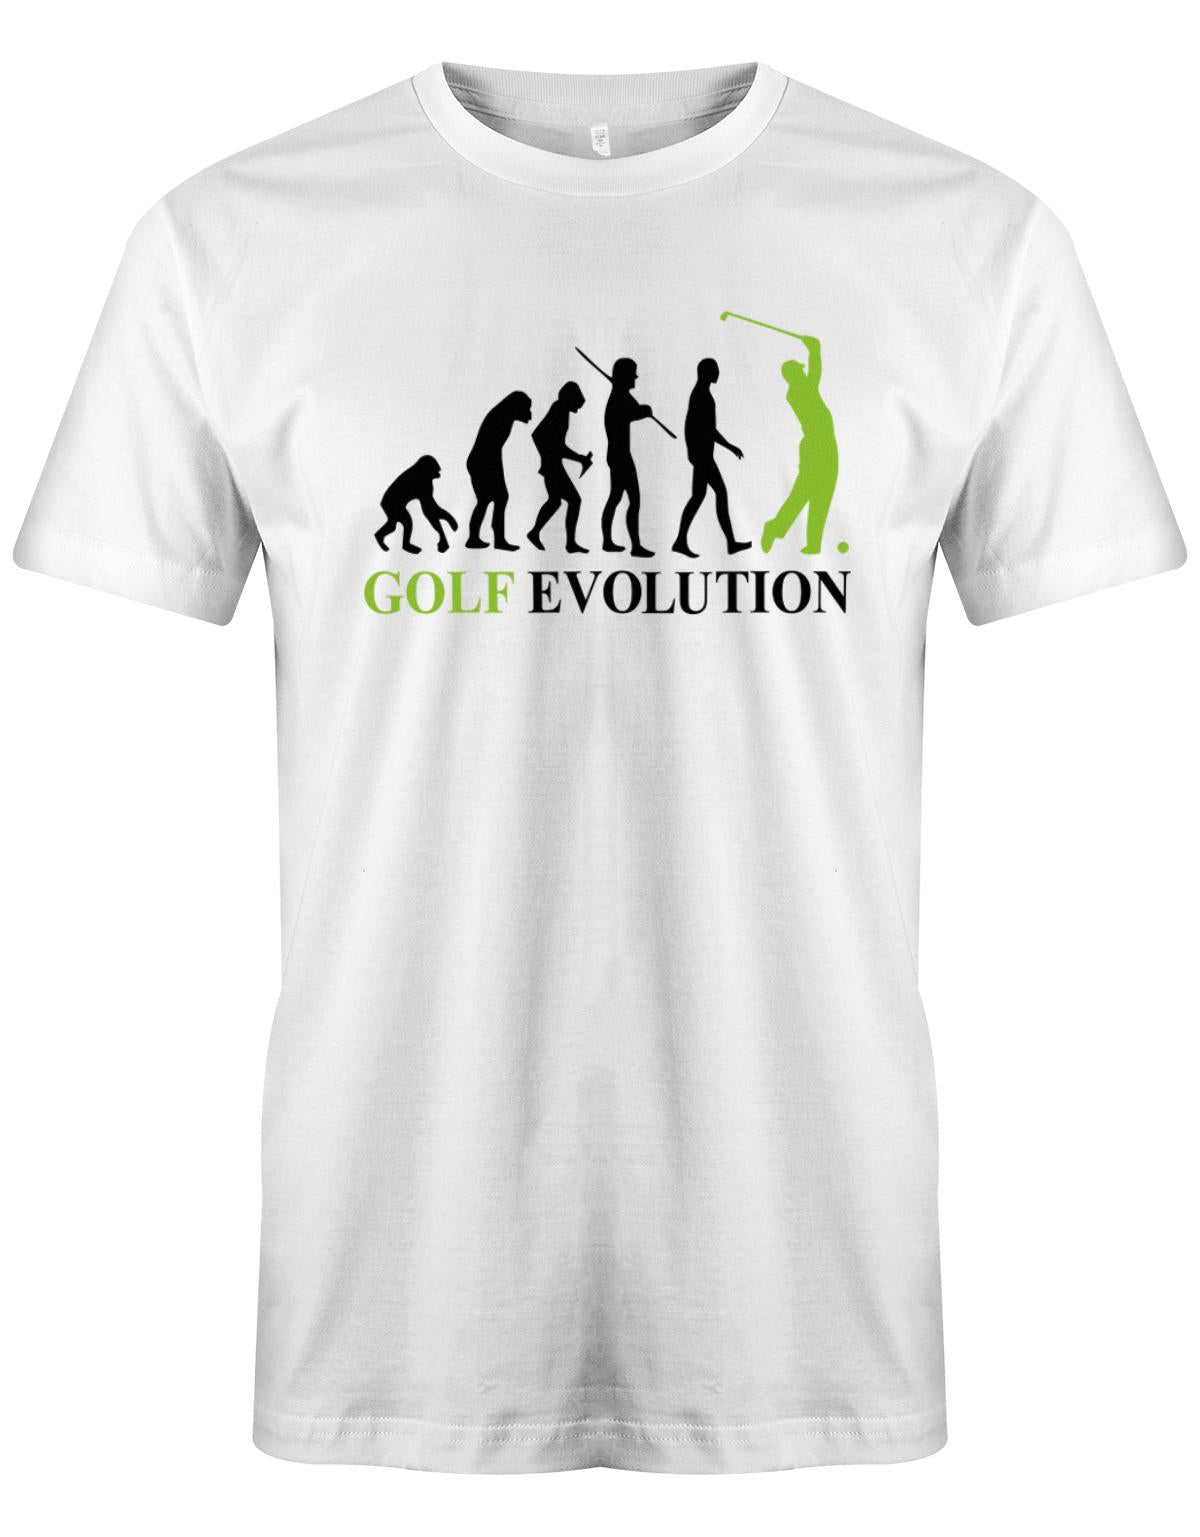 Golf-evolution-Herren-Shirt-Weiss